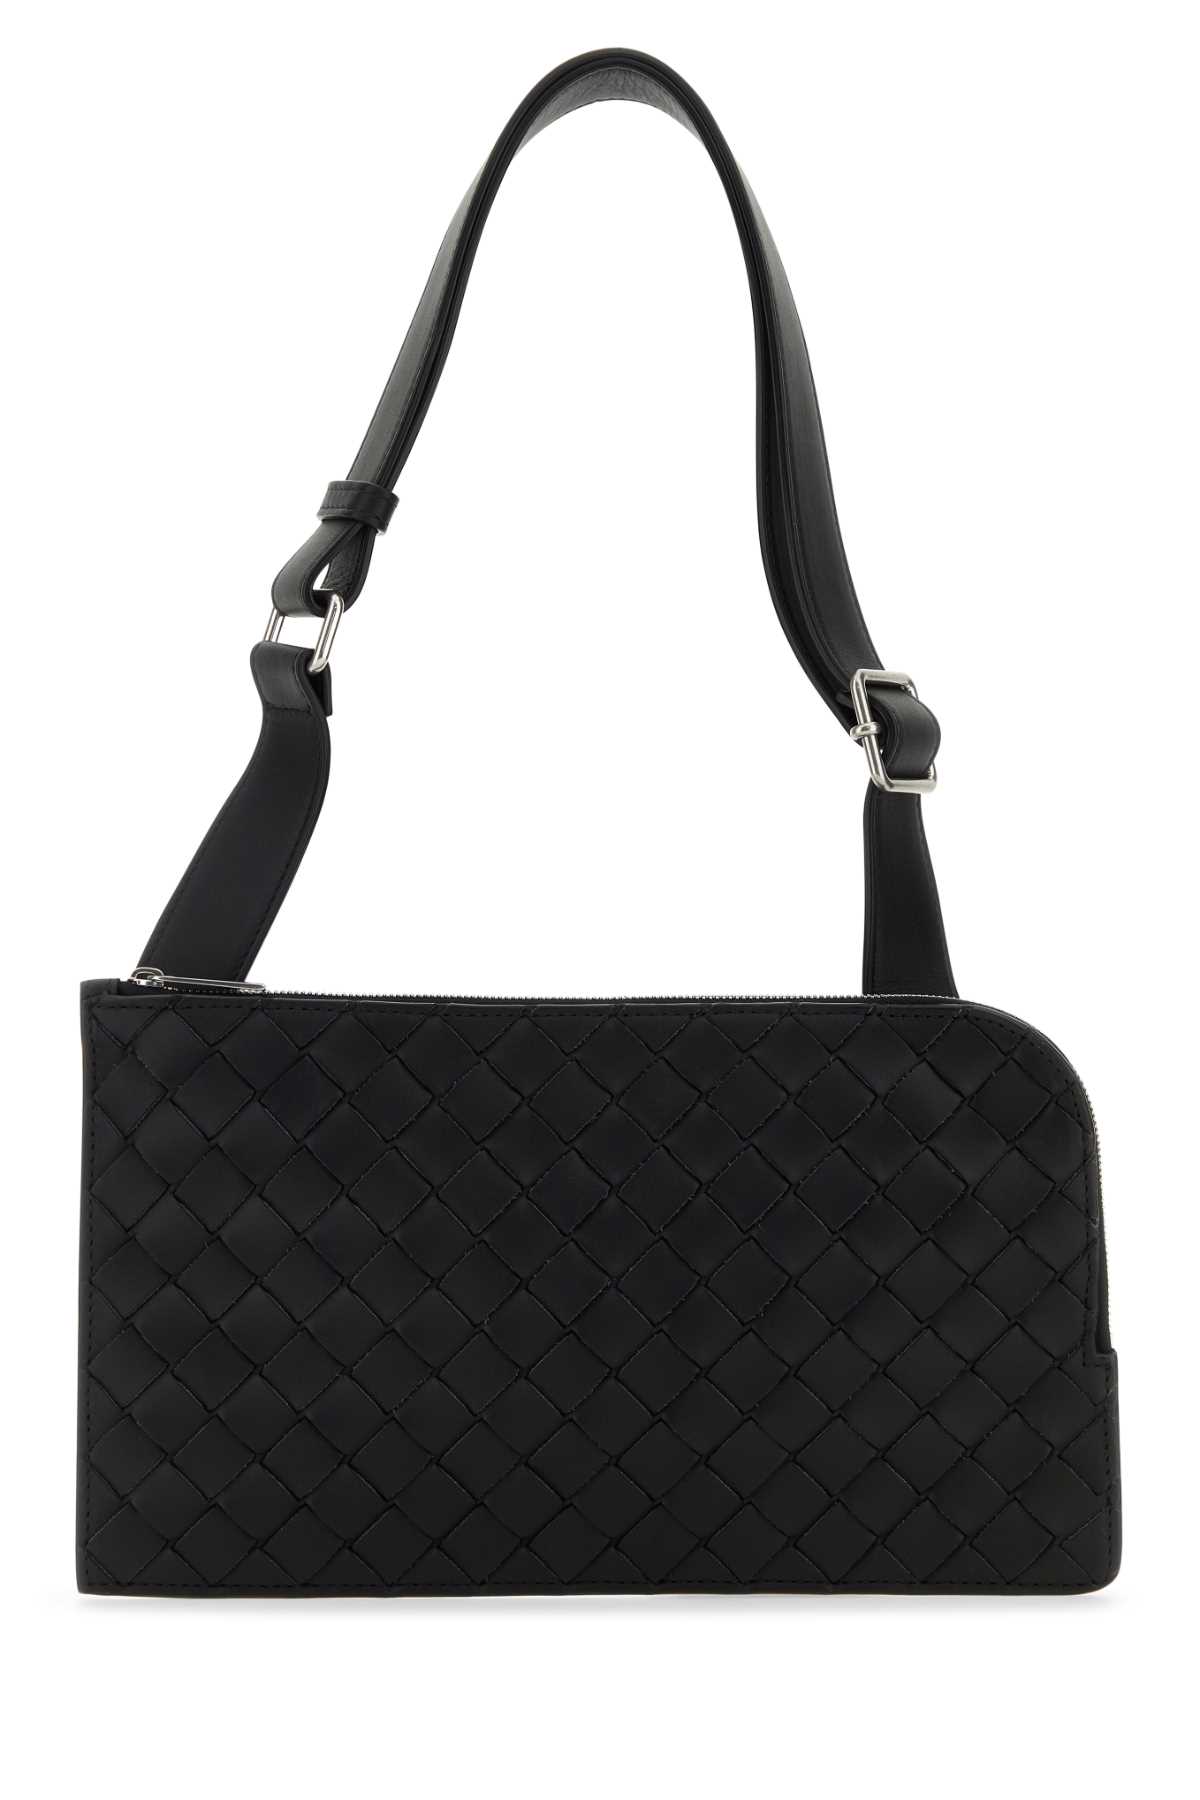 Bottega Veneta Black Leather Belt Bag In Blacksilver